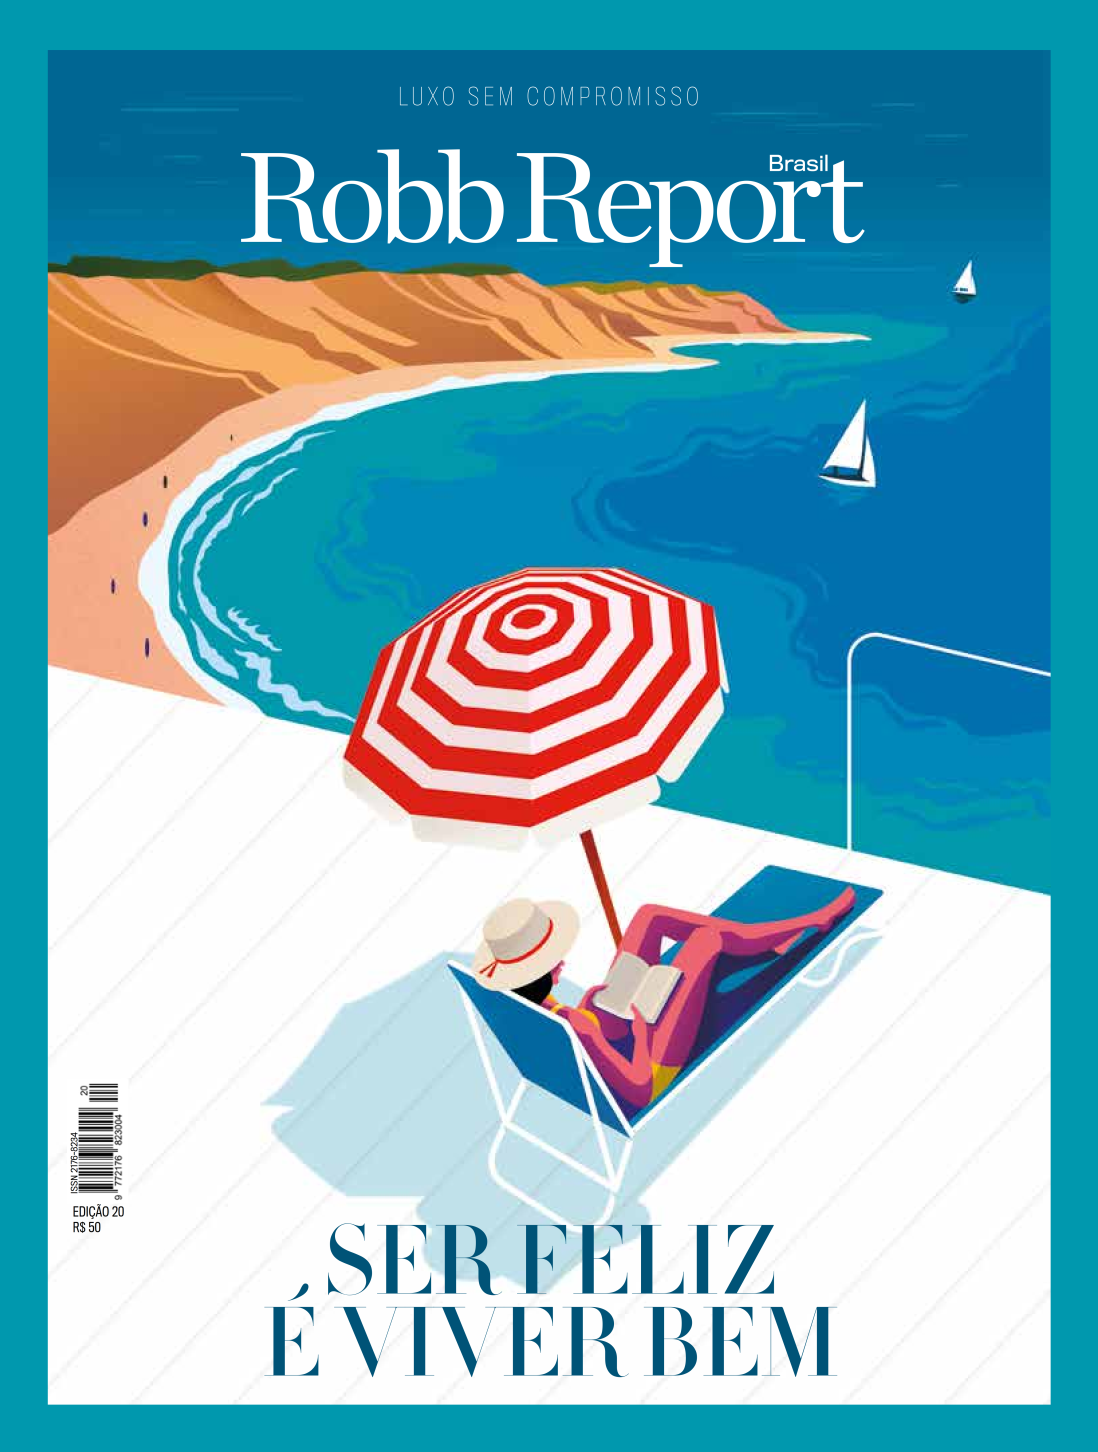 PDF - REVISTA ROBB REPORT 20